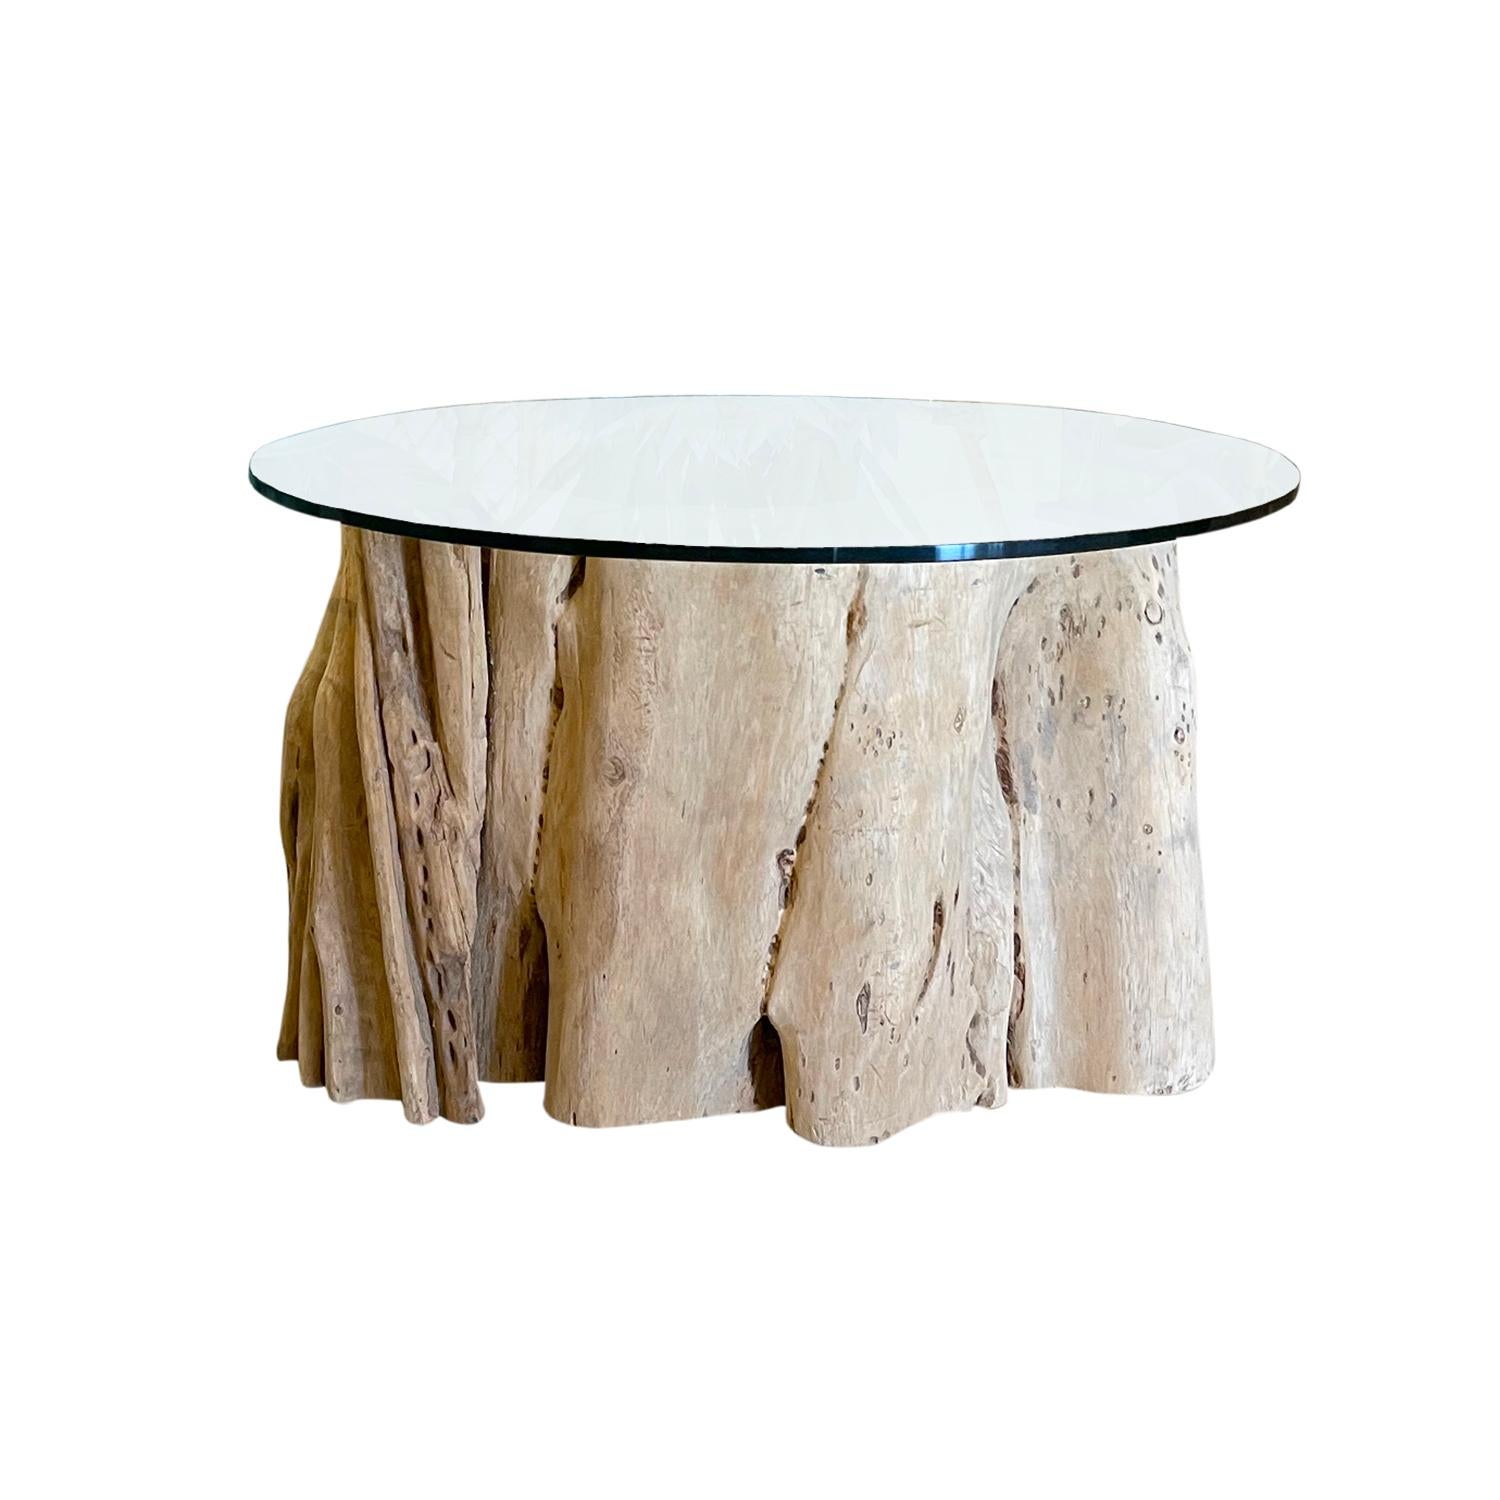 Un ensemble belge similaire de tables basses de singe en bois travaillé à la main, en bon état. Le canapé et les tables d'appoint sont composés d'un plateau rond en verre transparent. La taille et le design de la base de la racine naturelle varient.